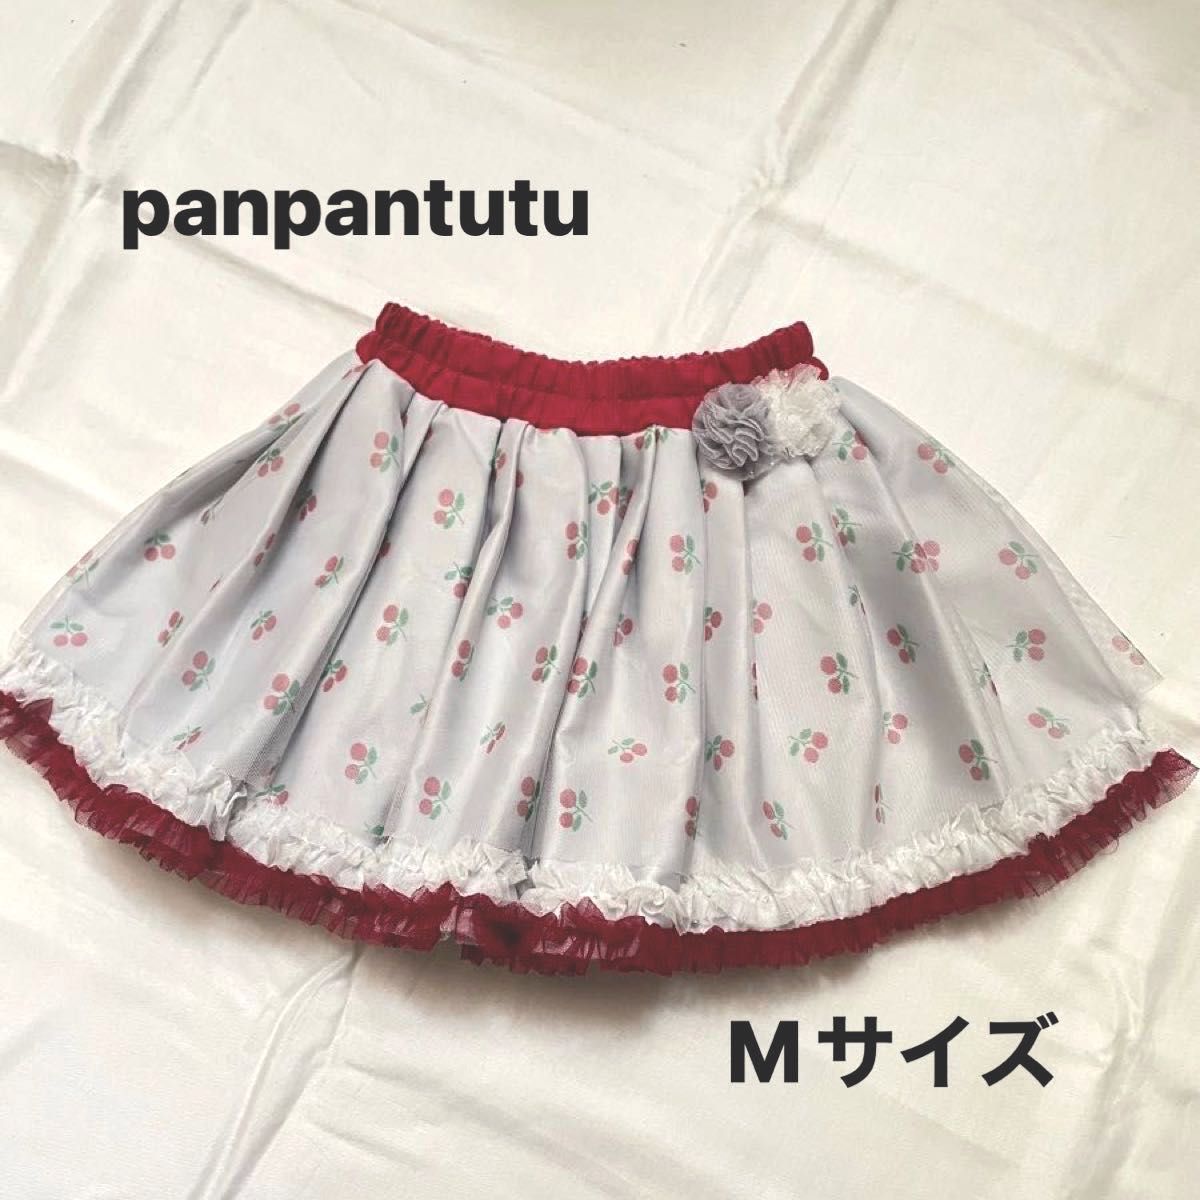 panpantutu パンパンチュチュ ヒロインチュチュ チェリーボンボン スカート Mサイズ